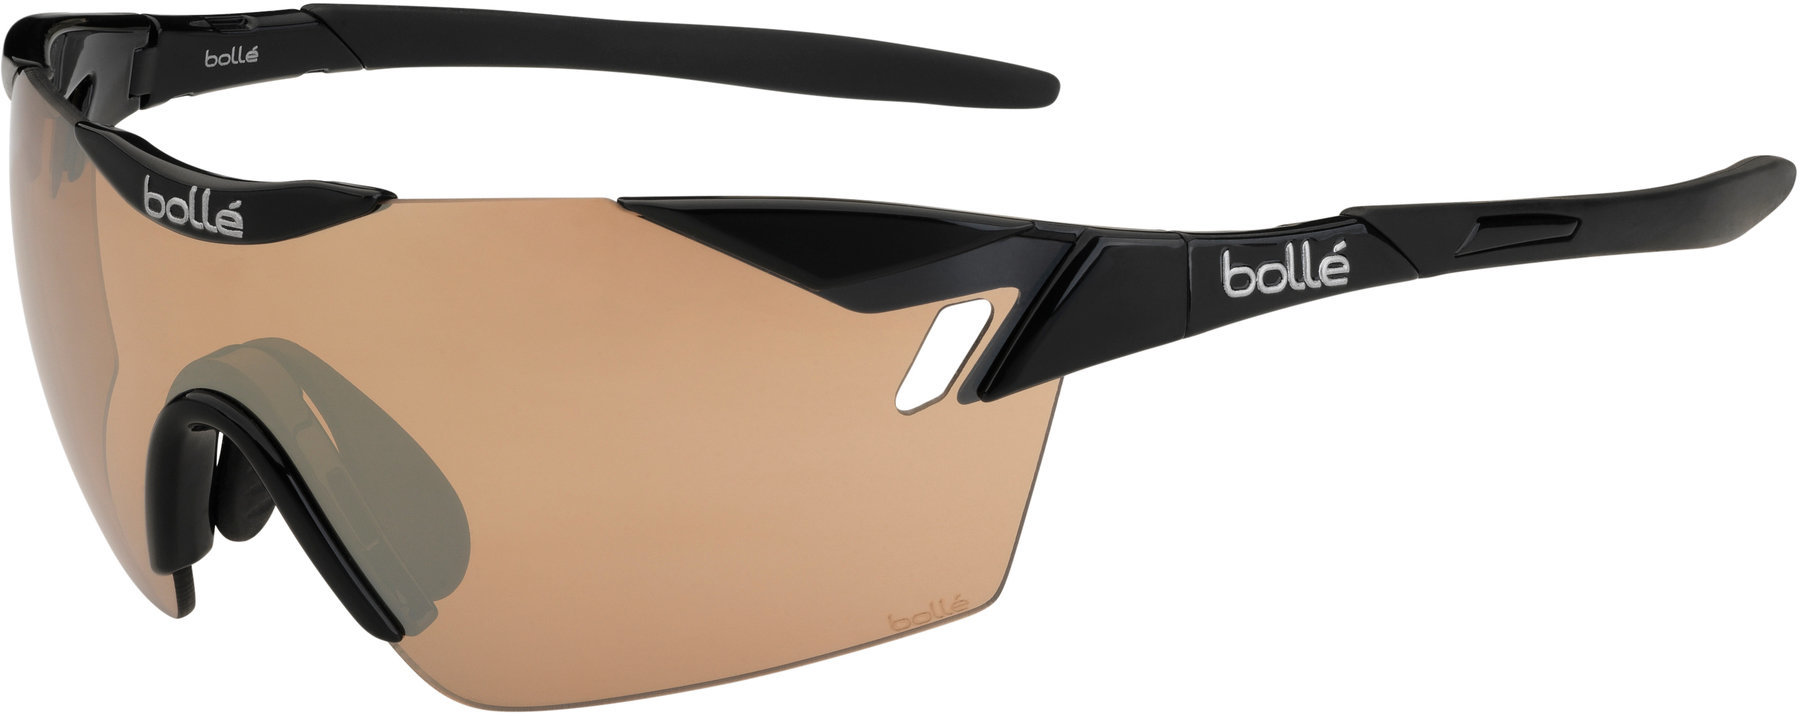 Sport Glasses Bollé 6th Sense Shiny Black Modulator V3 Golf oleo AF